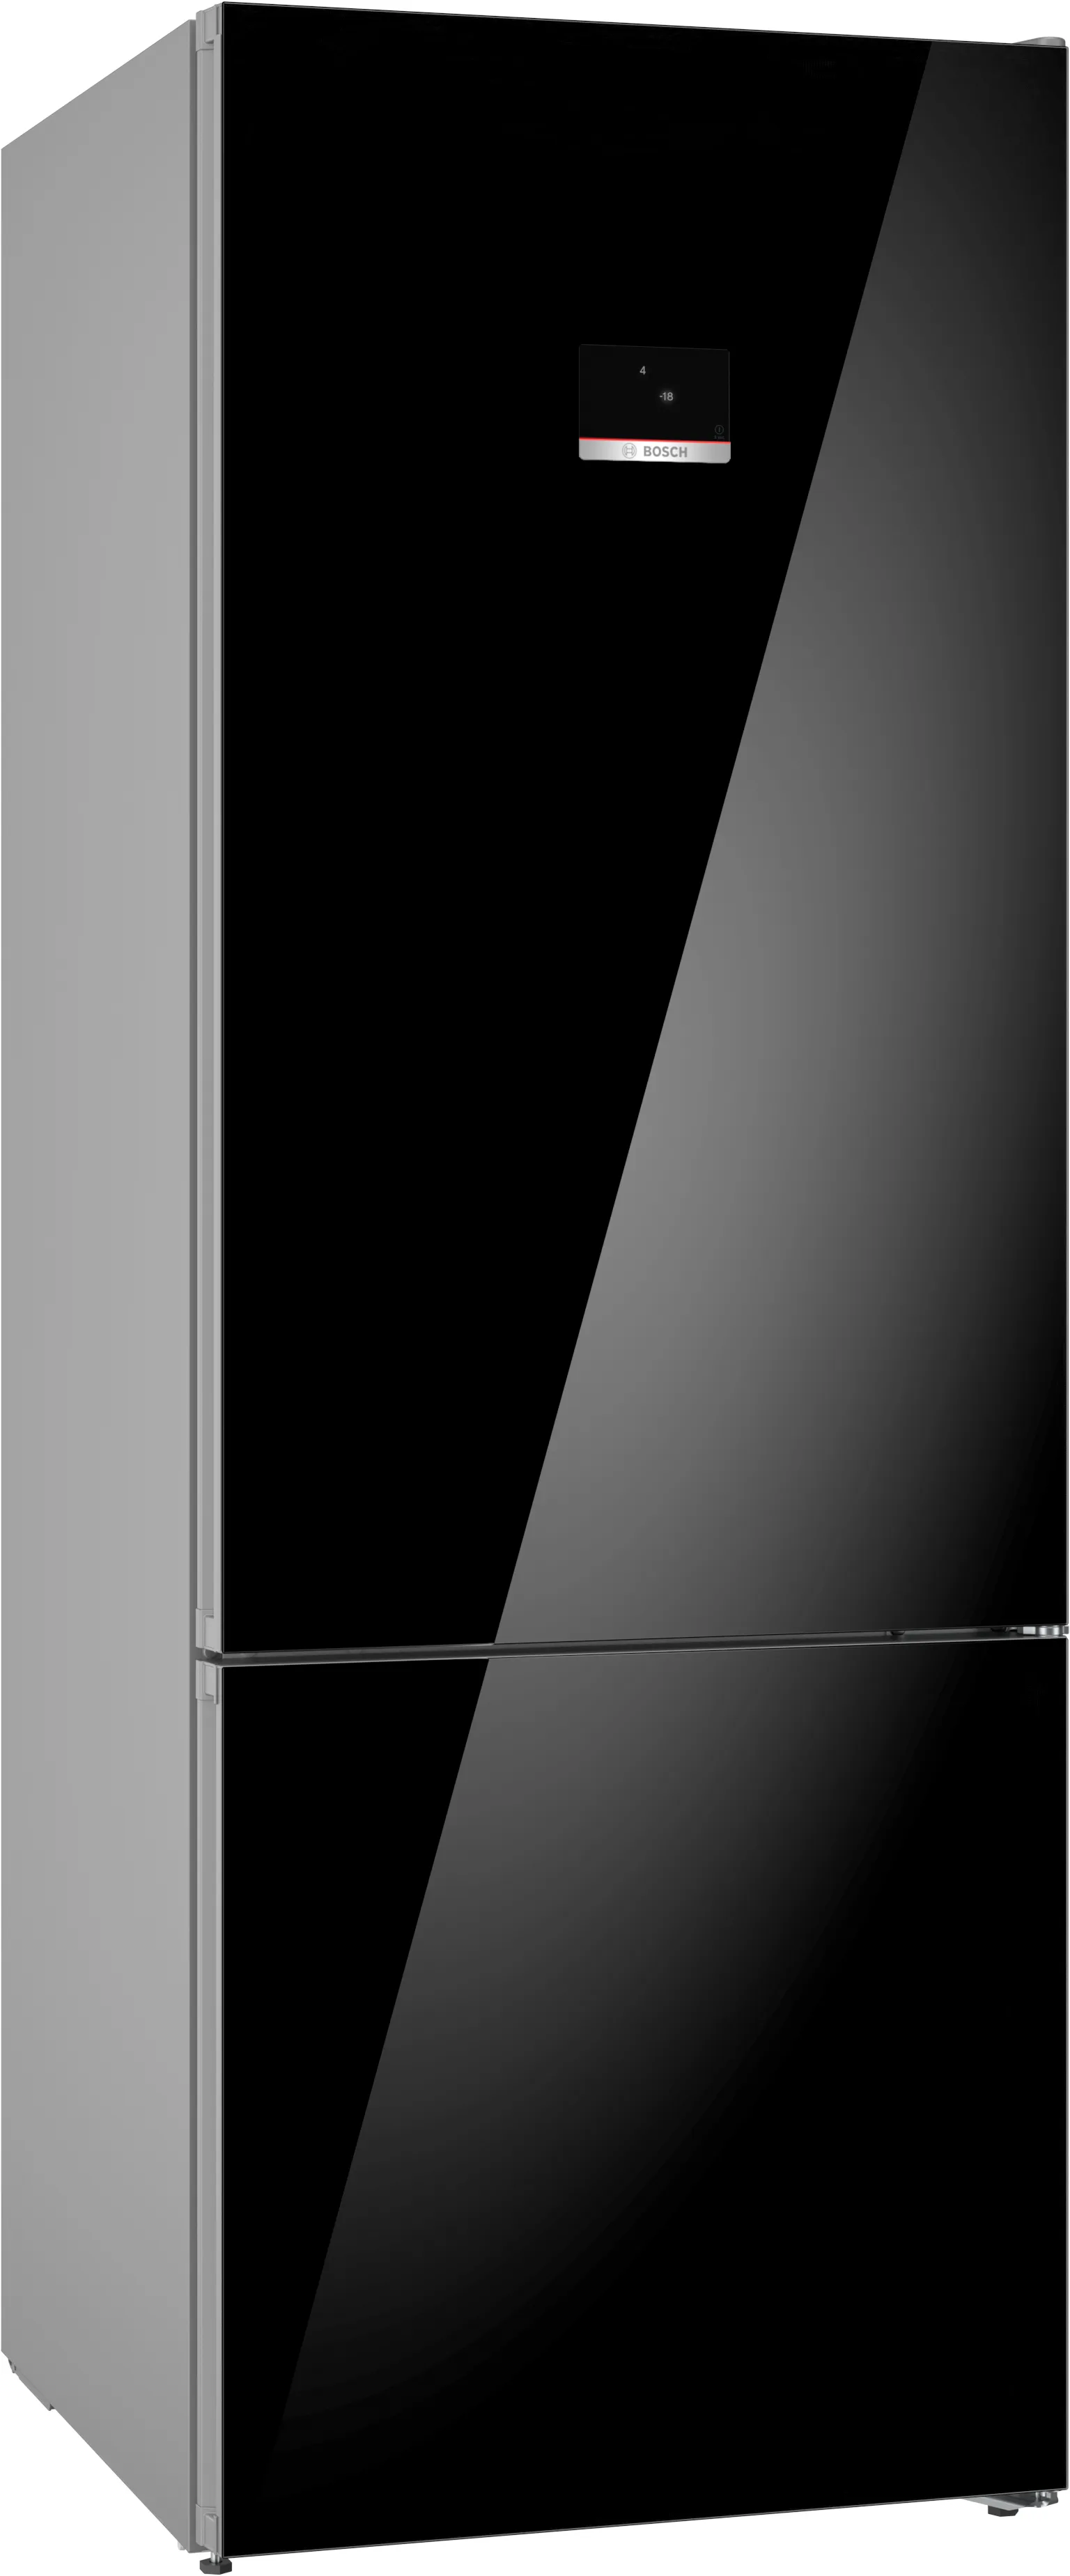 Série 6 Réfrigérateur-congélateur pose libre avec compartiment congélation en bas 193 x 70 cm Noir 